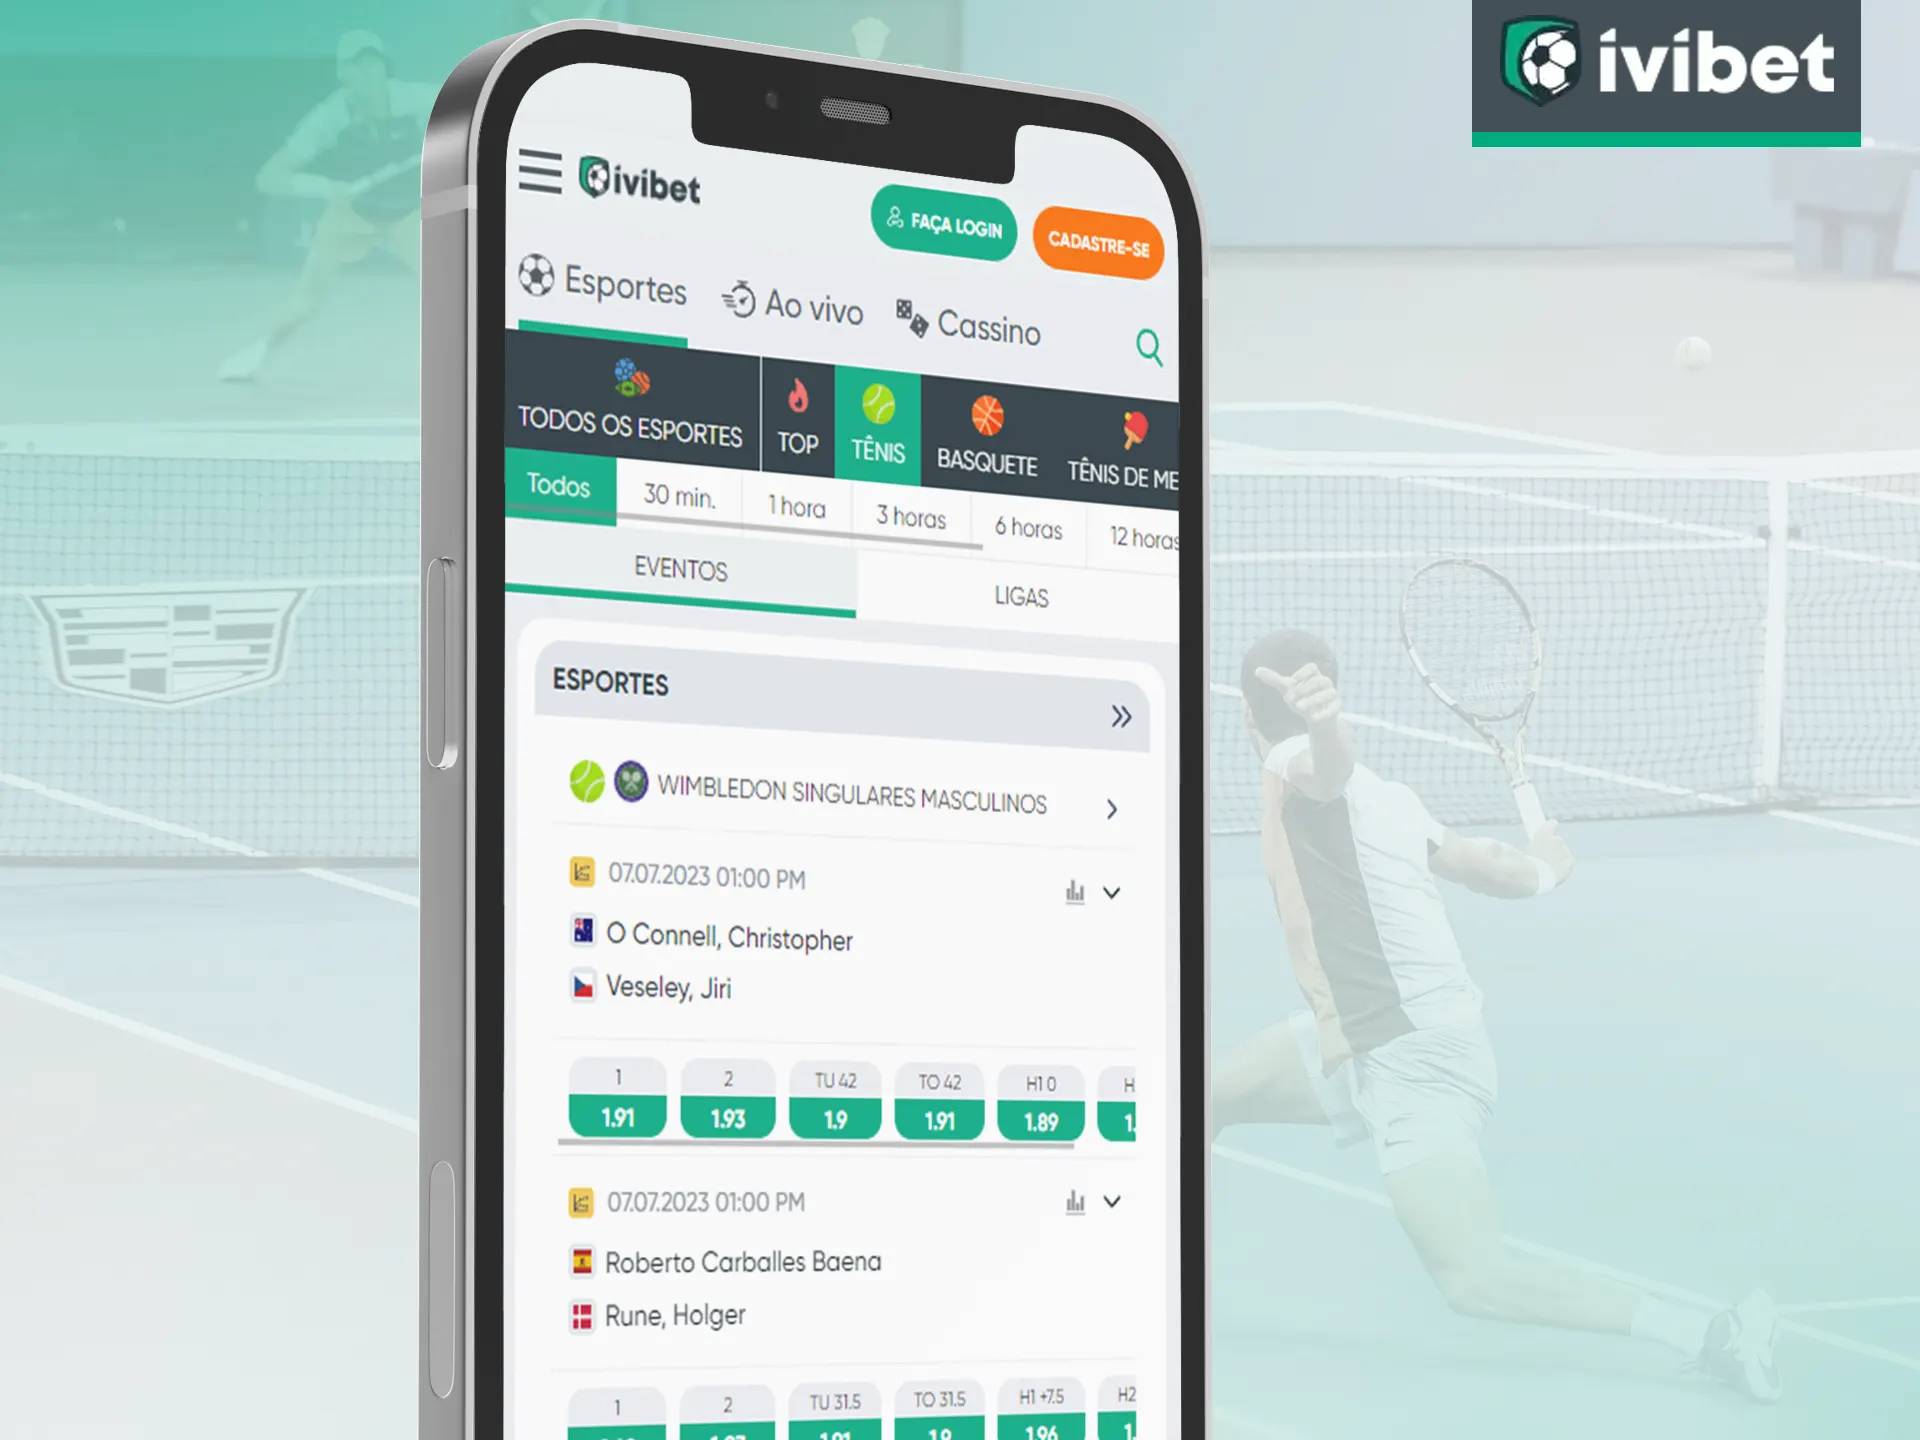 Na Ivibet, você tem acesso a apostas de tênis a partir do seu telefone, no aplicativo, em qualquer lugar.